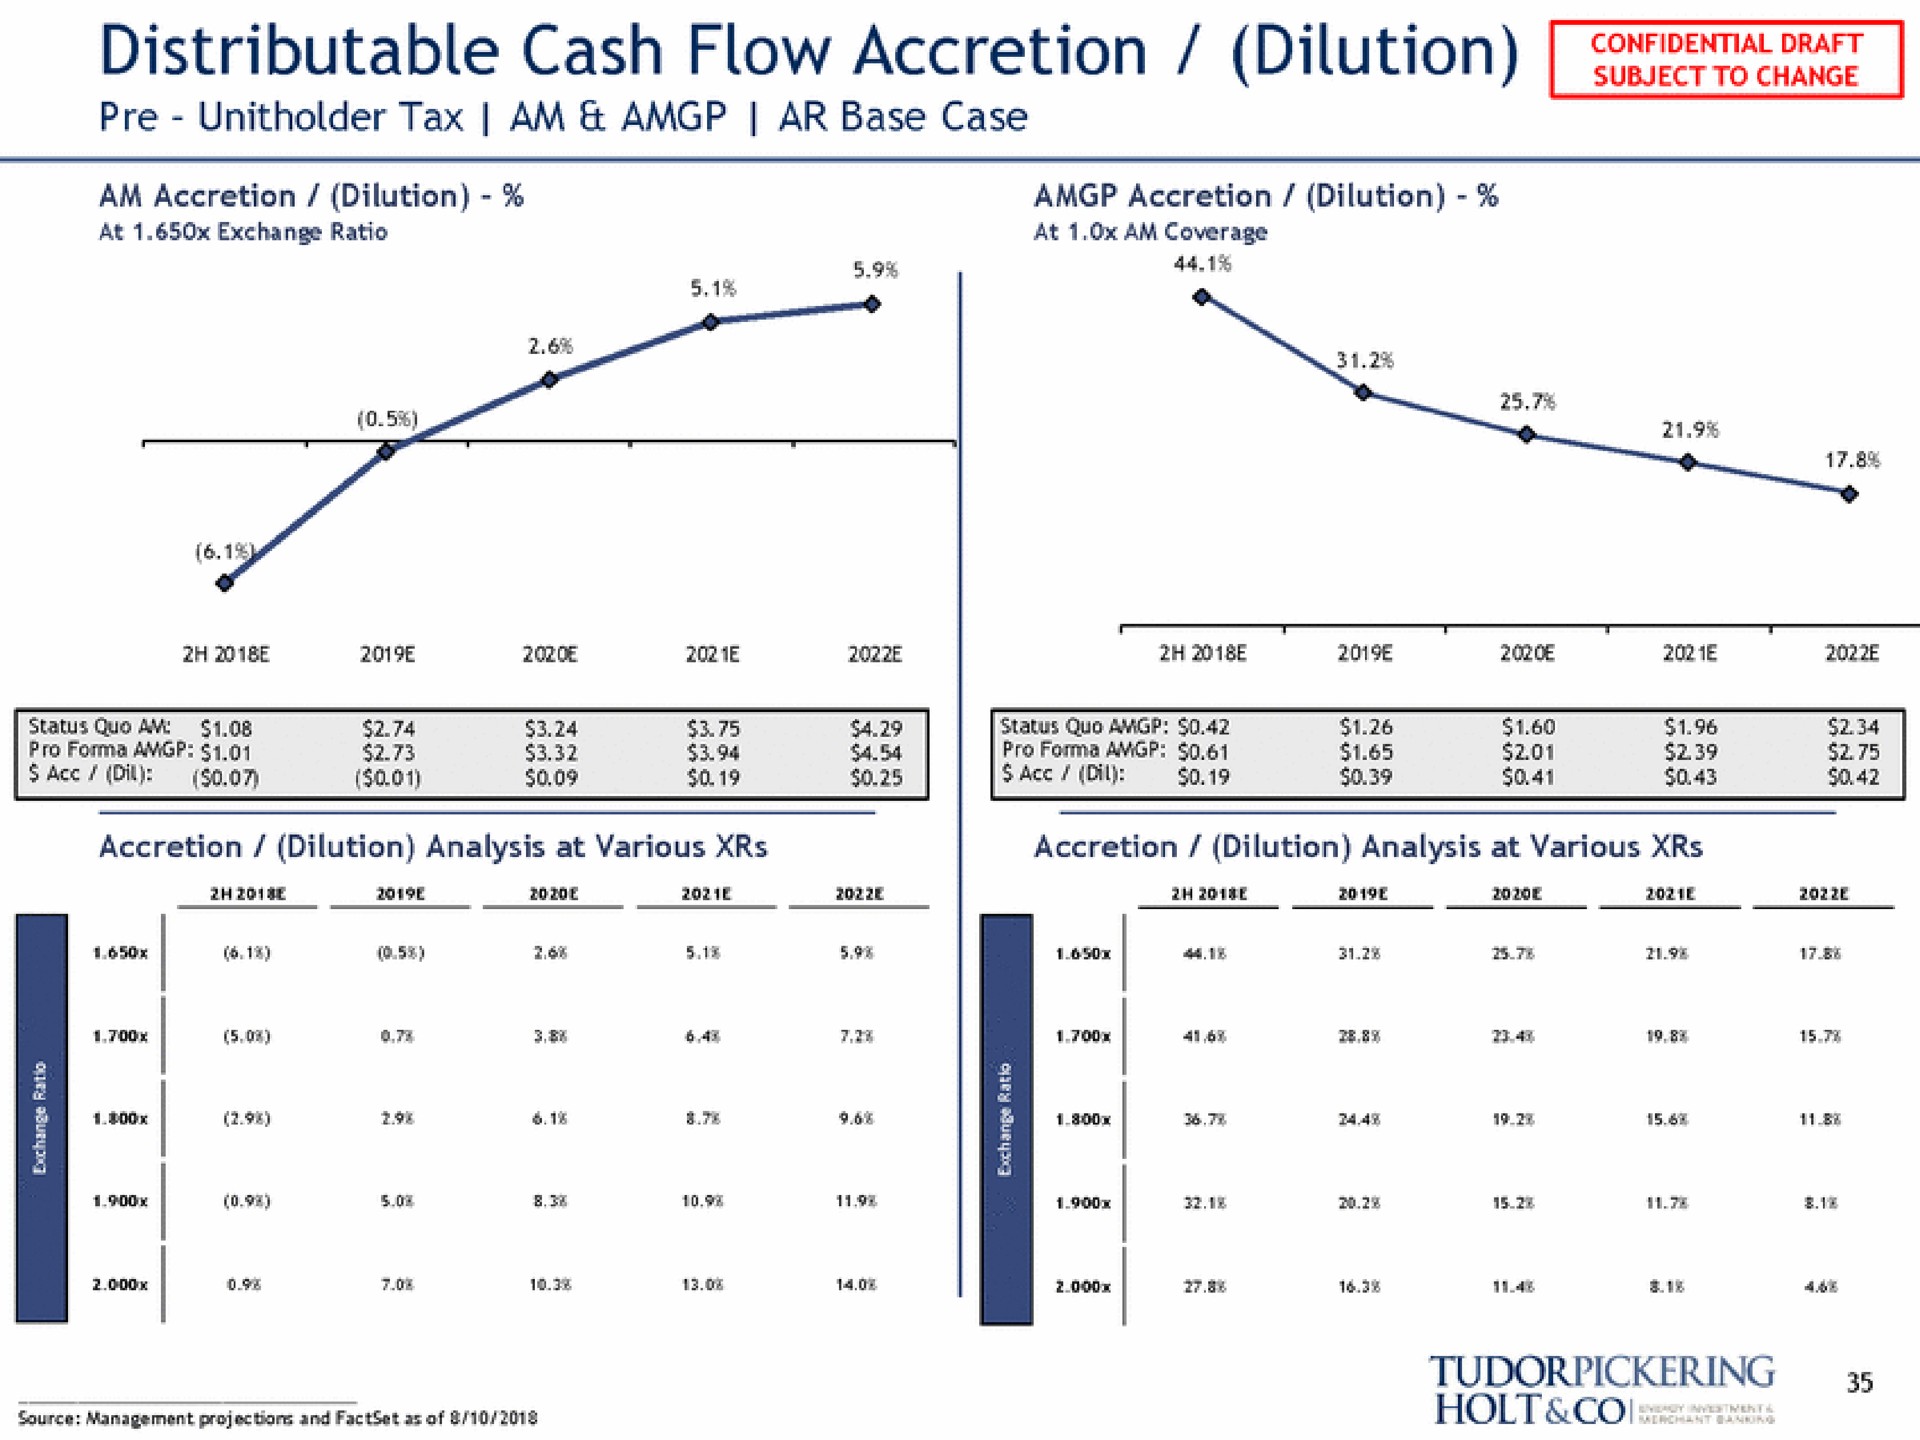 distributable cash flow accretion dilution tax am base case | Tudor, Pickering, Holt & Co